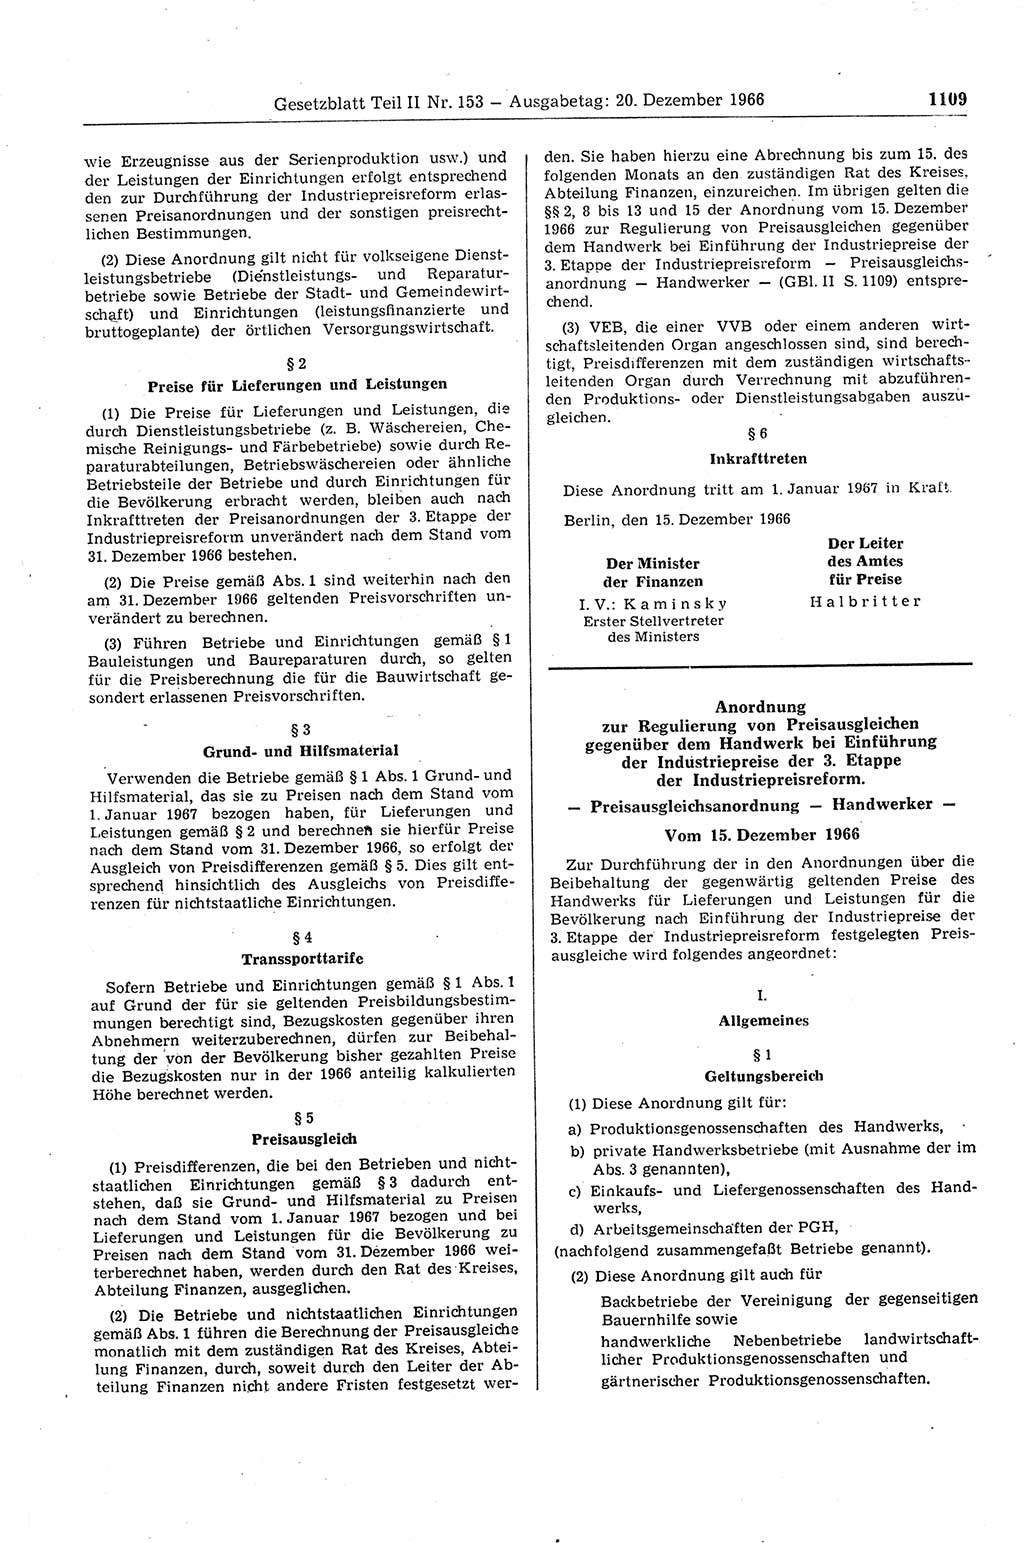 Gesetzblatt (GBl.) der Deutschen Demokratischen Republik (DDR) Teil ⅠⅠ 1966, Seite 1109 (GBl. DDR ⅠⅠ 1966, S. 1109)